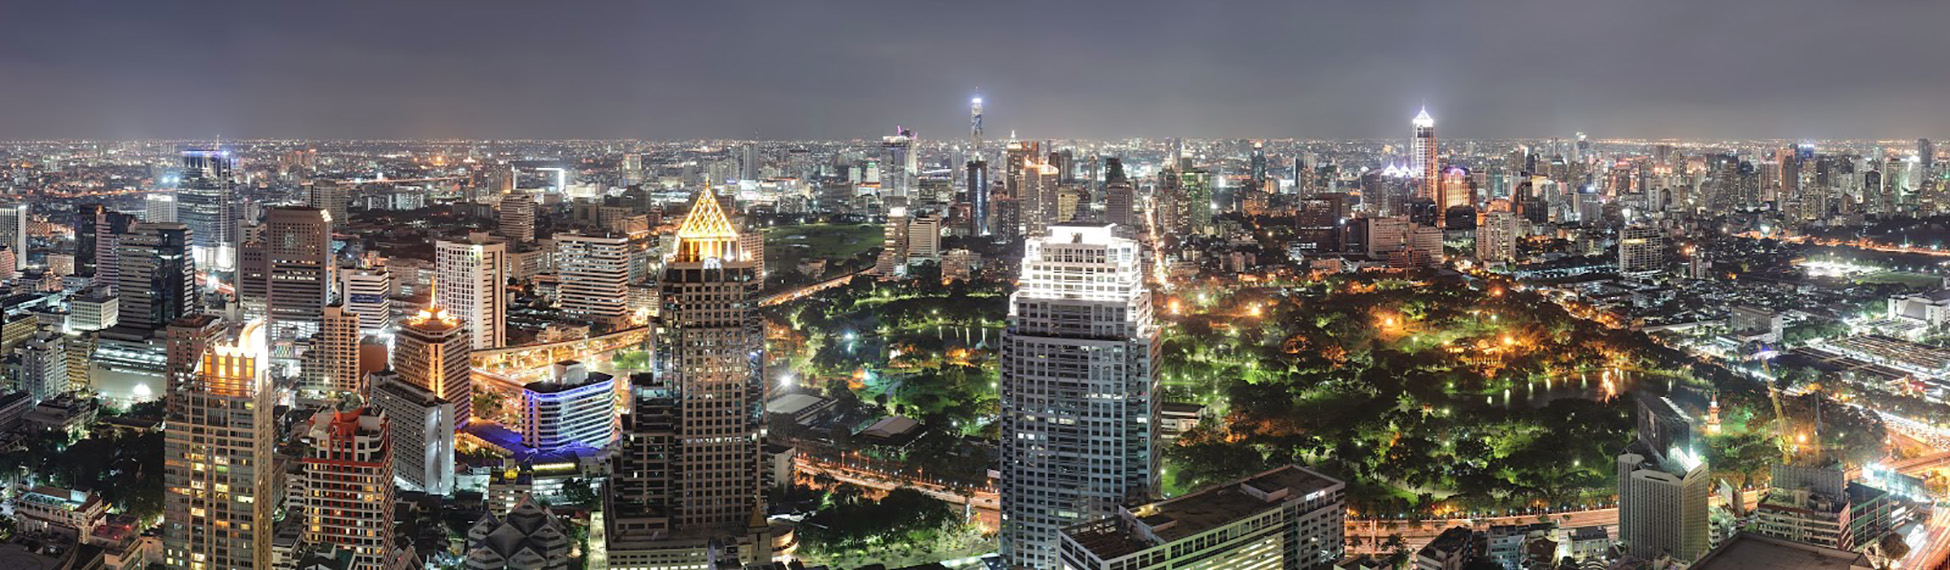 Bangkok City at Night